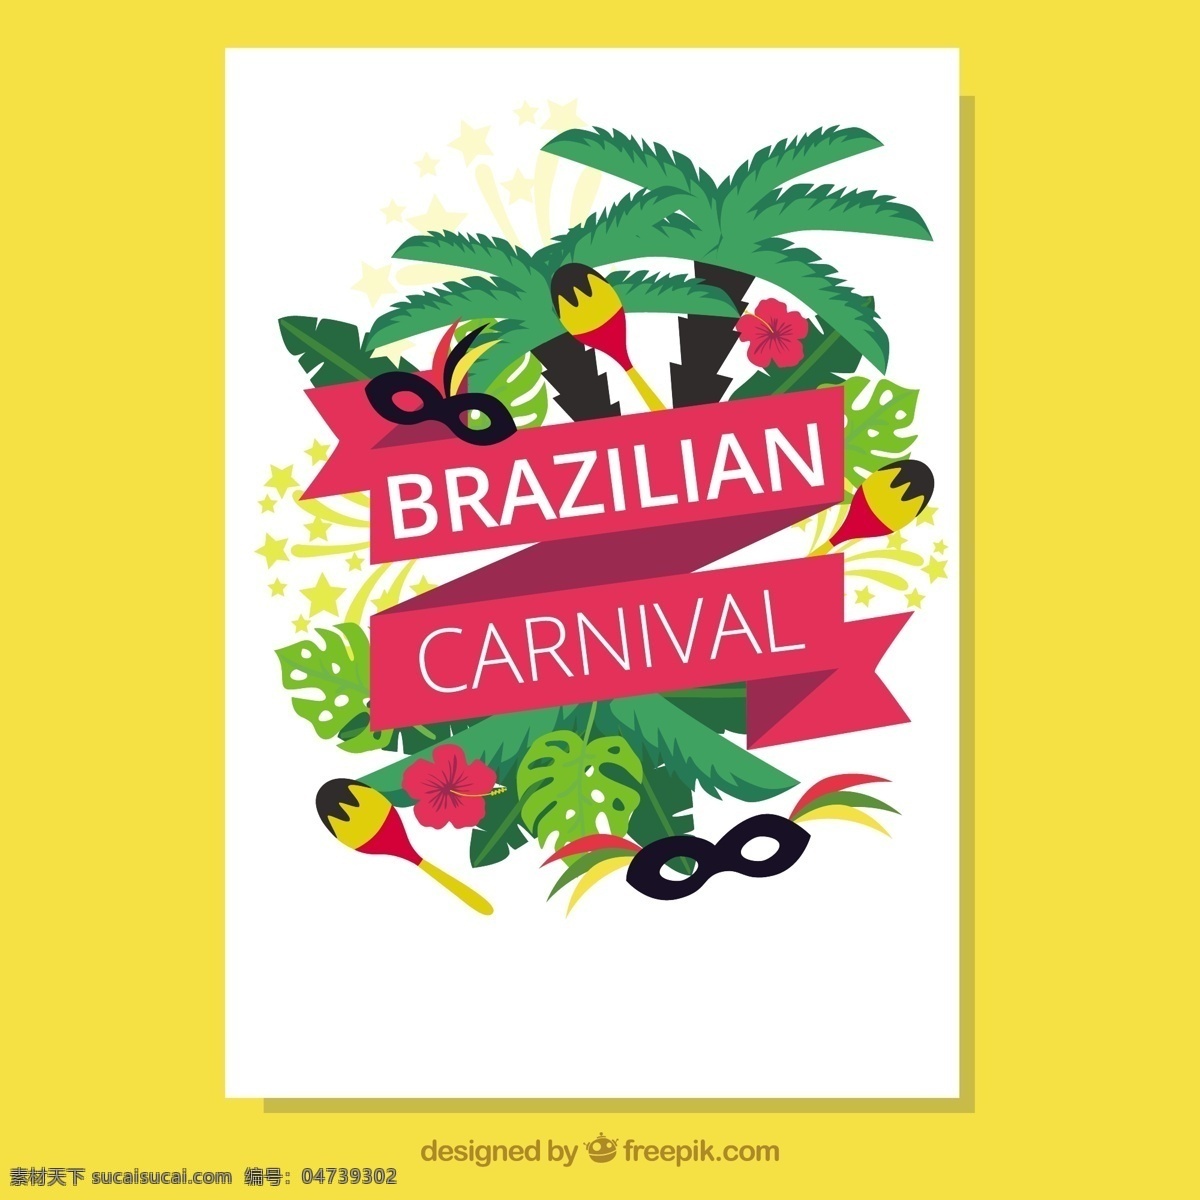 巴西 狂欢节 面具 砂 卡 小册子 传单 方 模板 手册模板 庆典 节日 事件 狂欢 传单模板 党的传单 树木 棕榈 假面舞会 娱乐